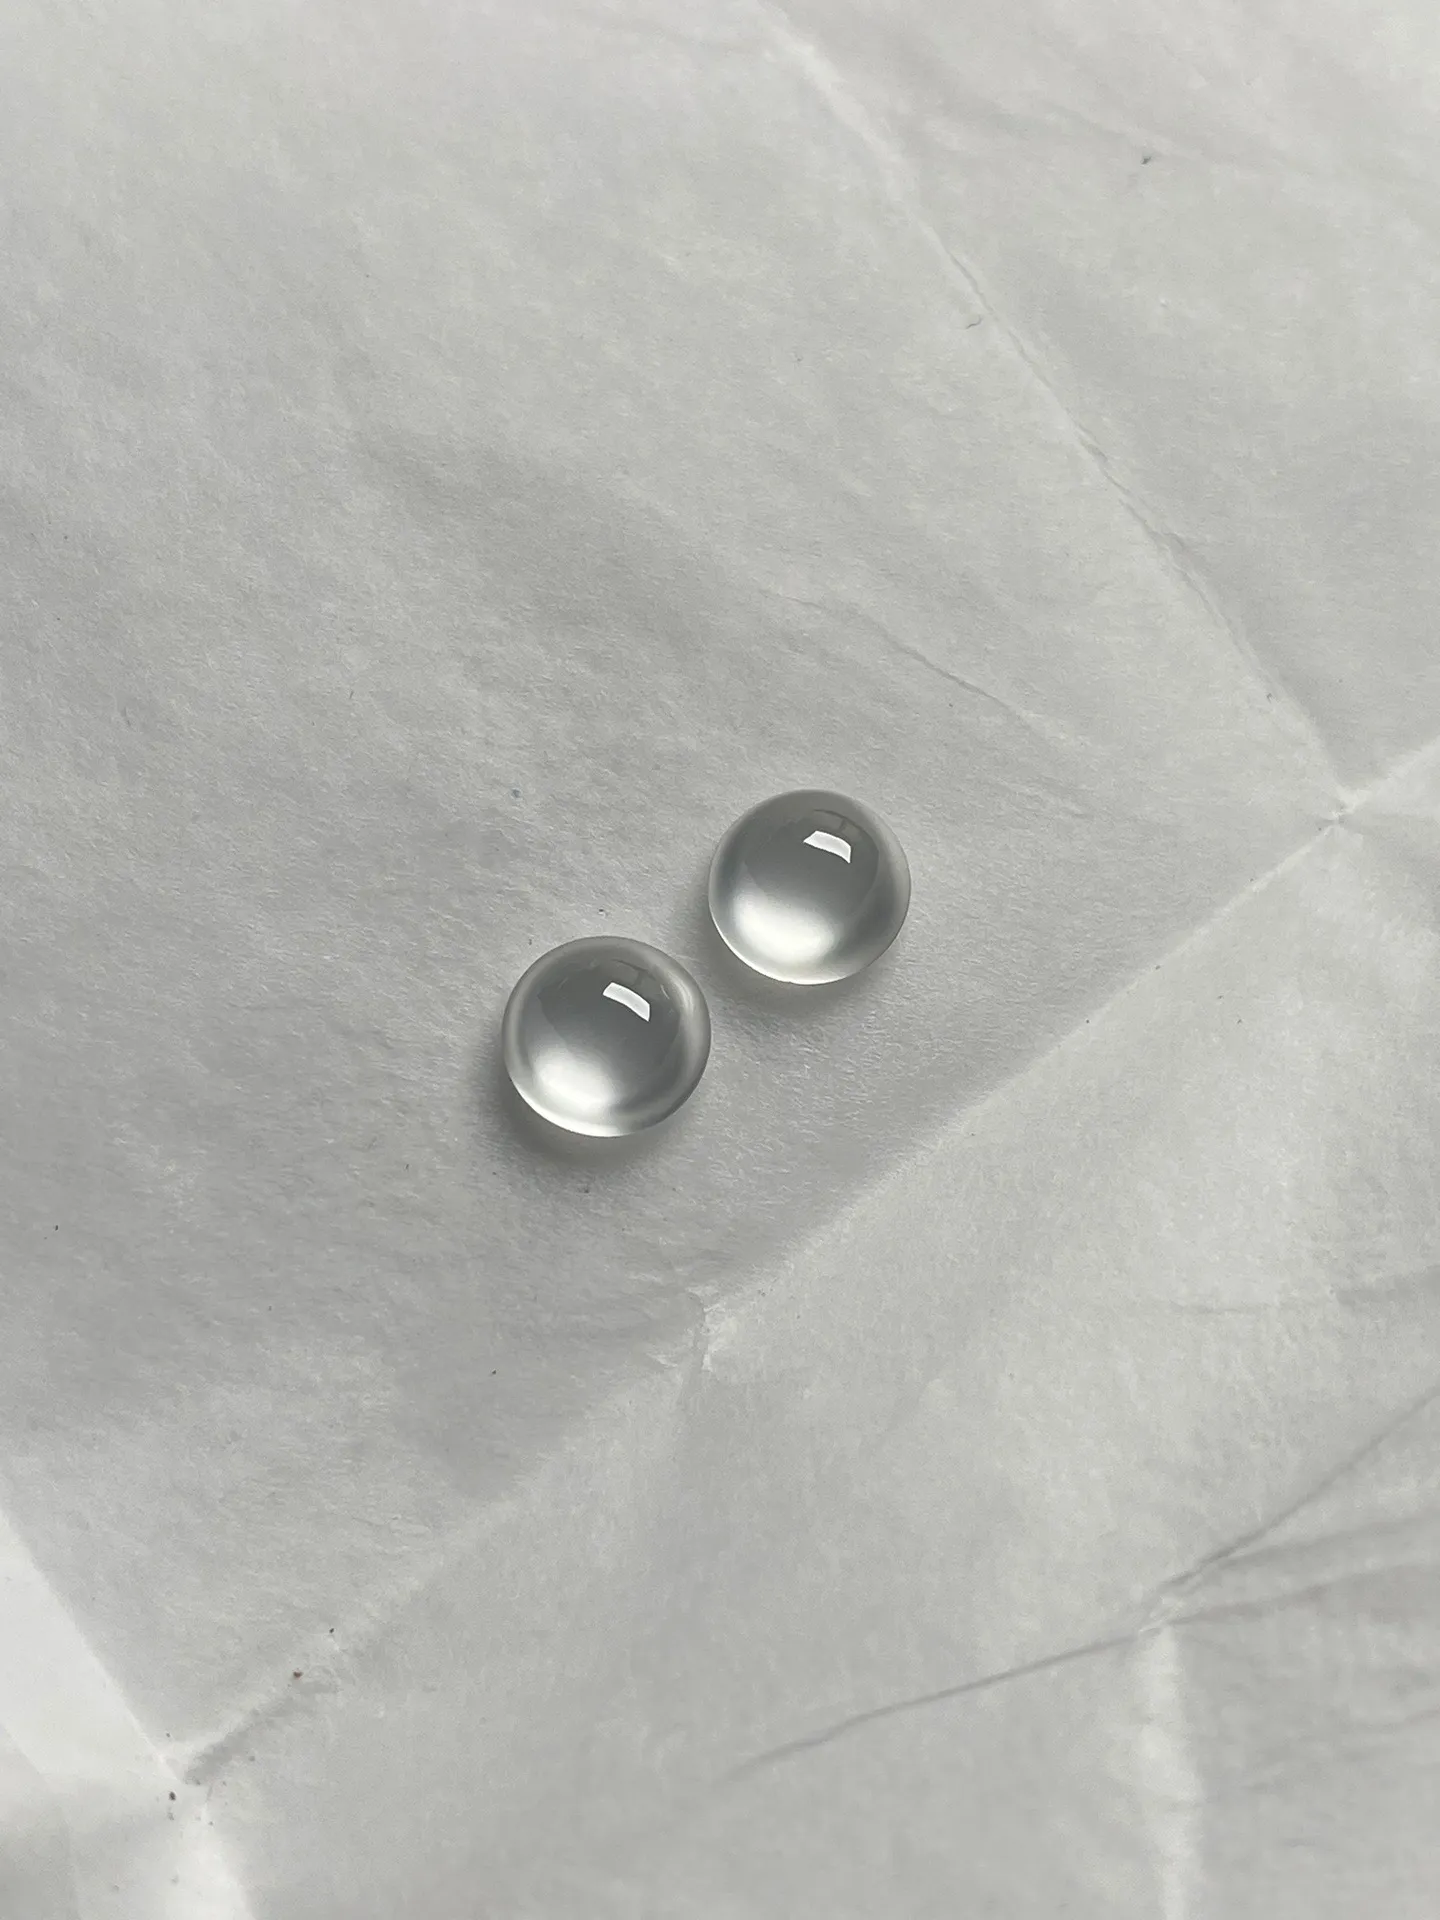 一对∙玻璃种强荧光白钢蛋面
尺寸5.7*3.1mm